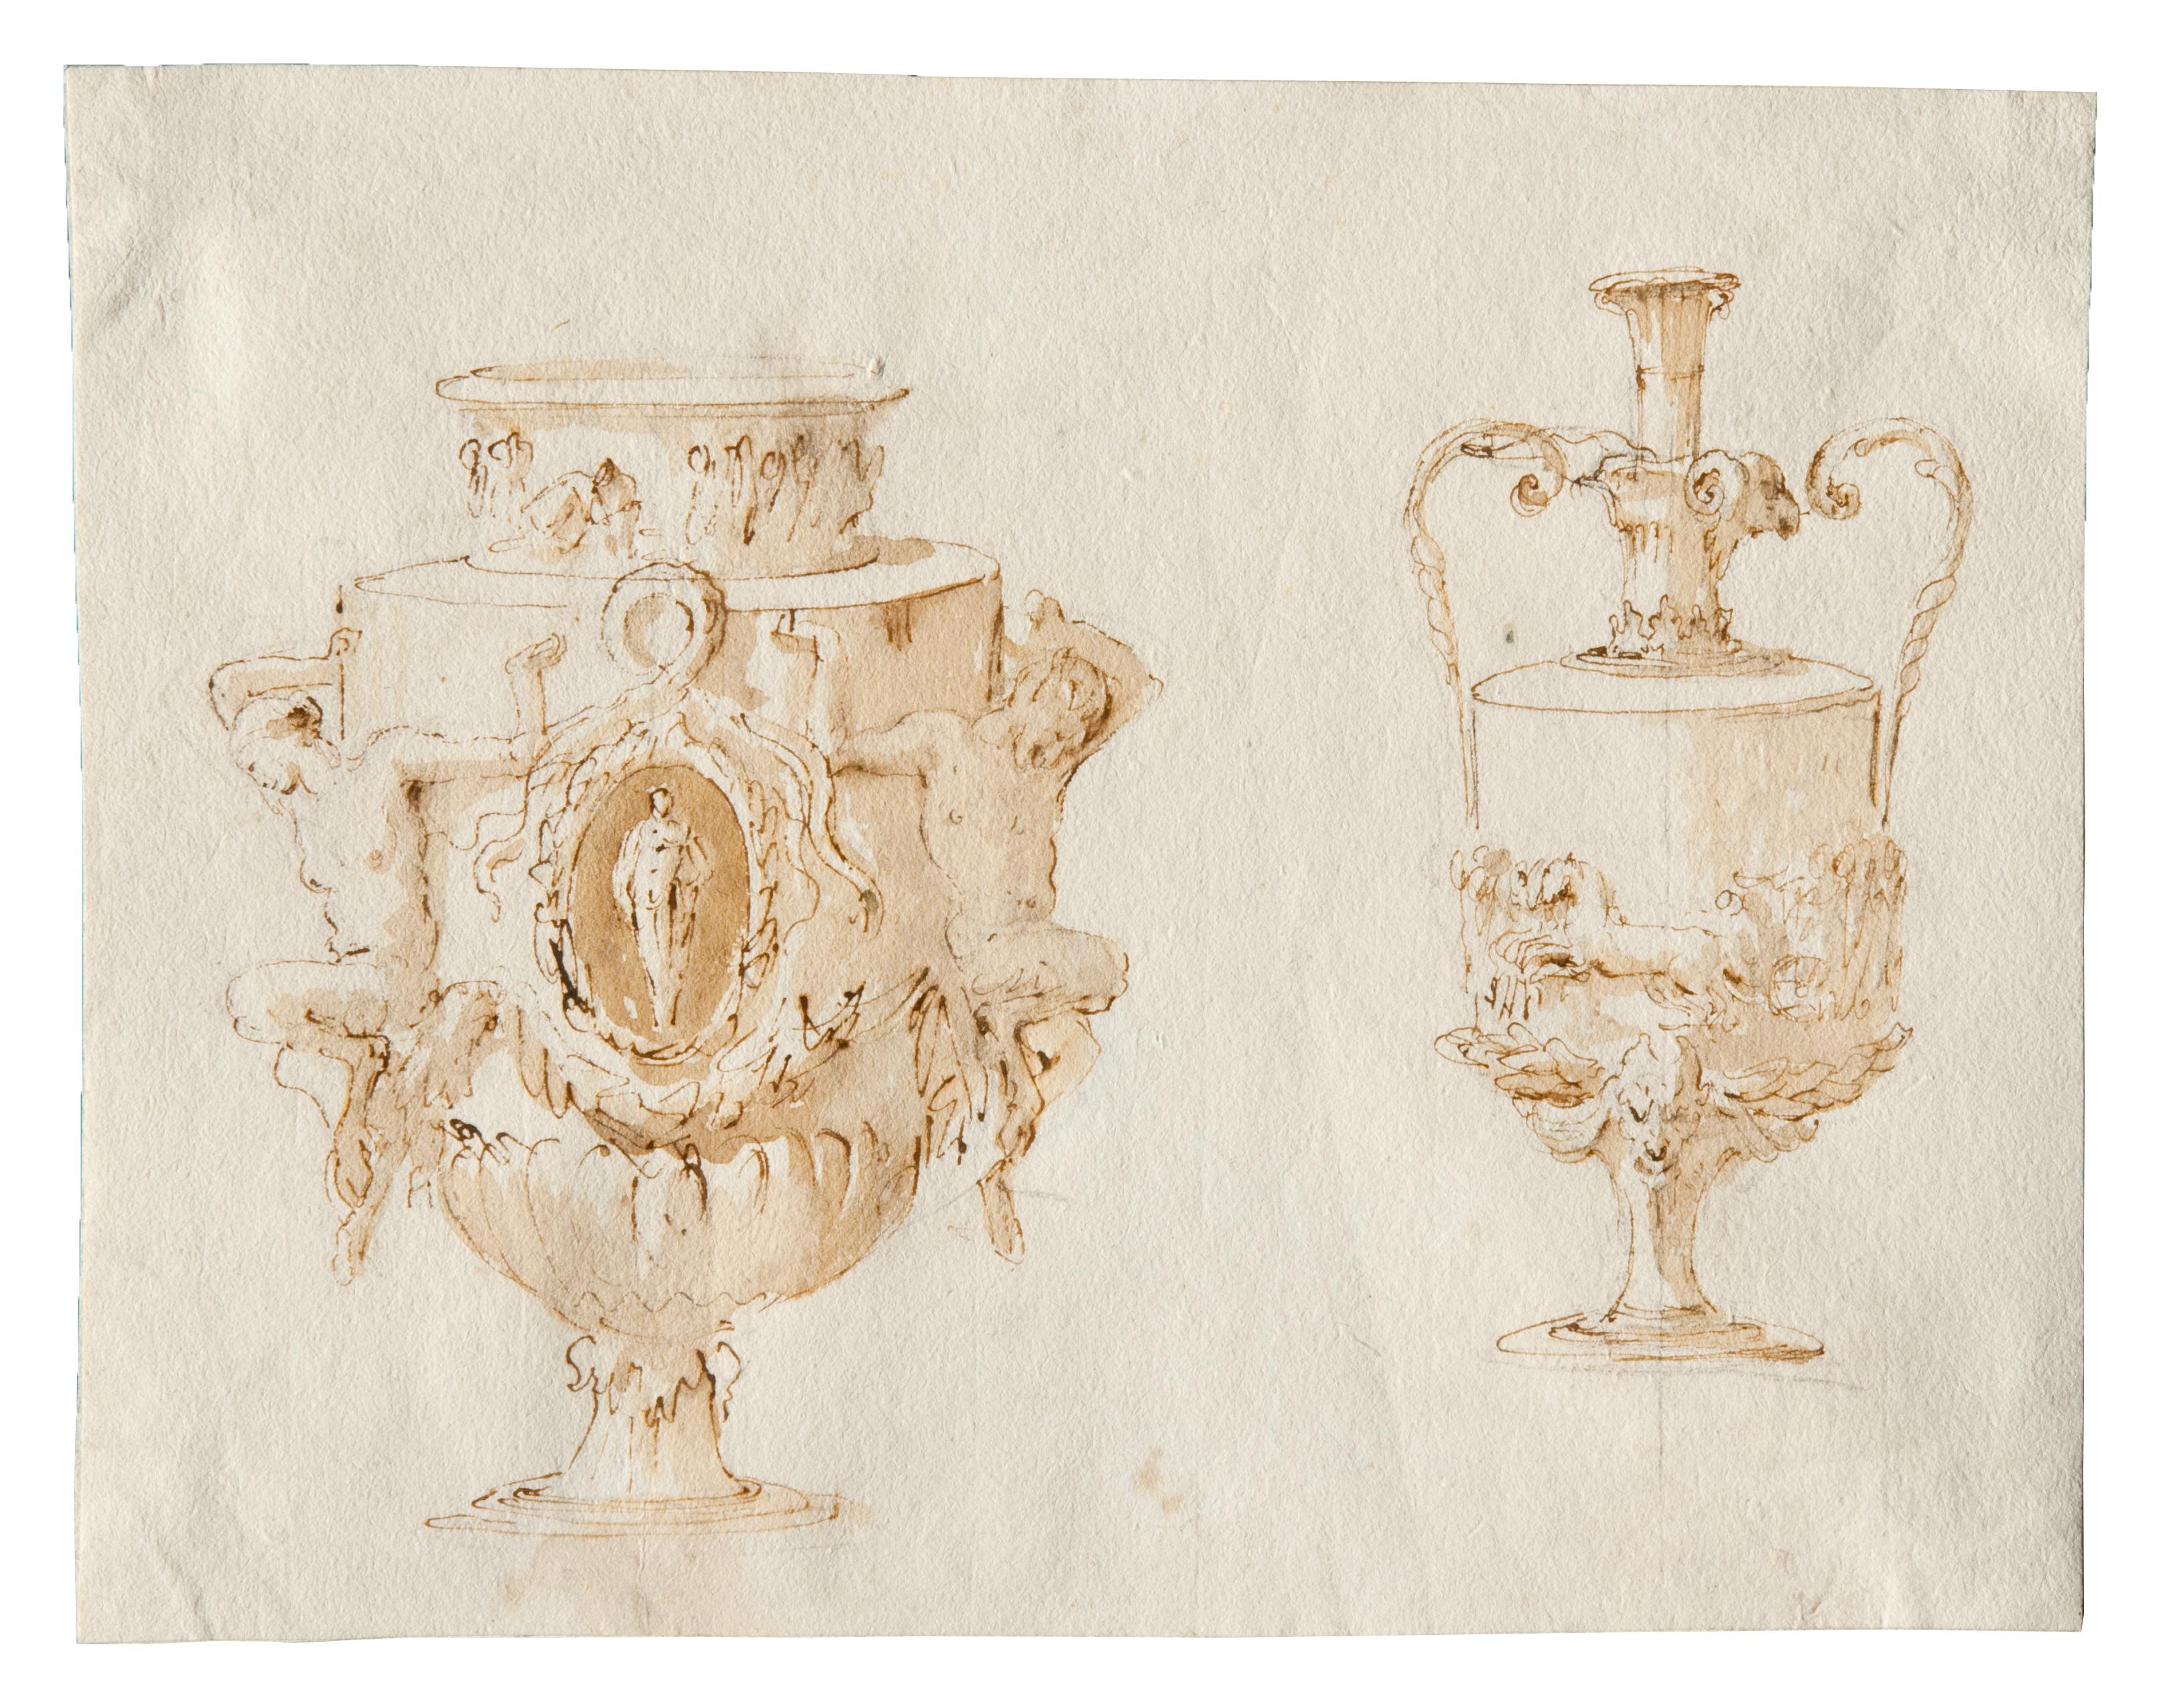 Vasi, penna e inchiostro bruno, inchiostro diluito bruno, su traccia di grafite, mm 189x240, Trieste, Civico Museo Sartorio